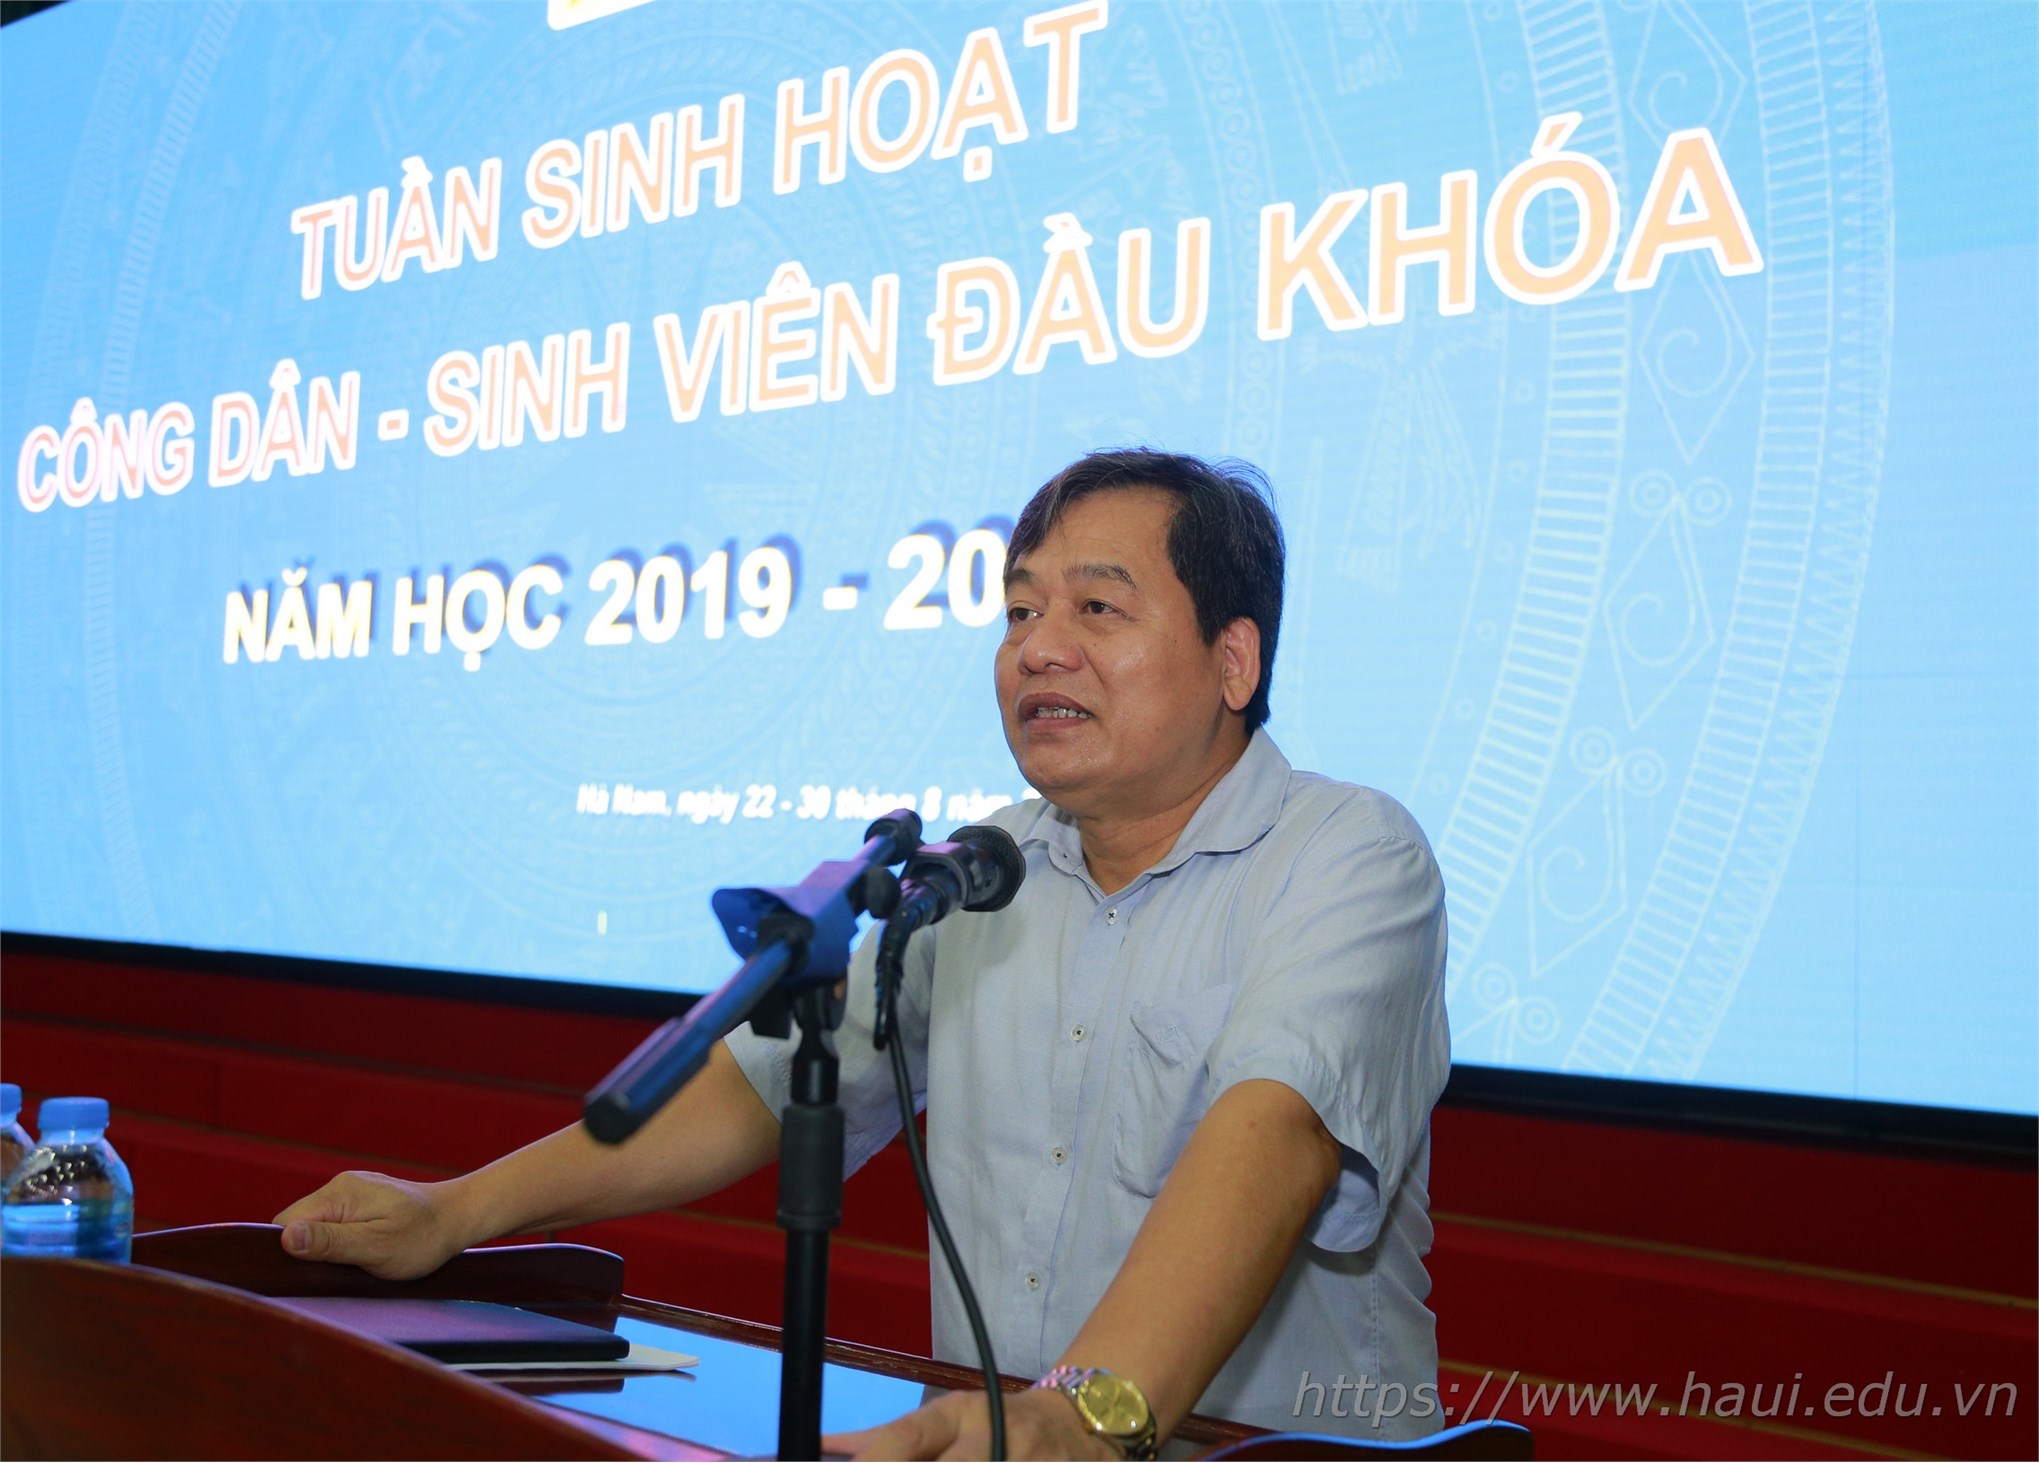 Tuần sinh hoạt công dân Đại học Công nghiệp Hà Nội